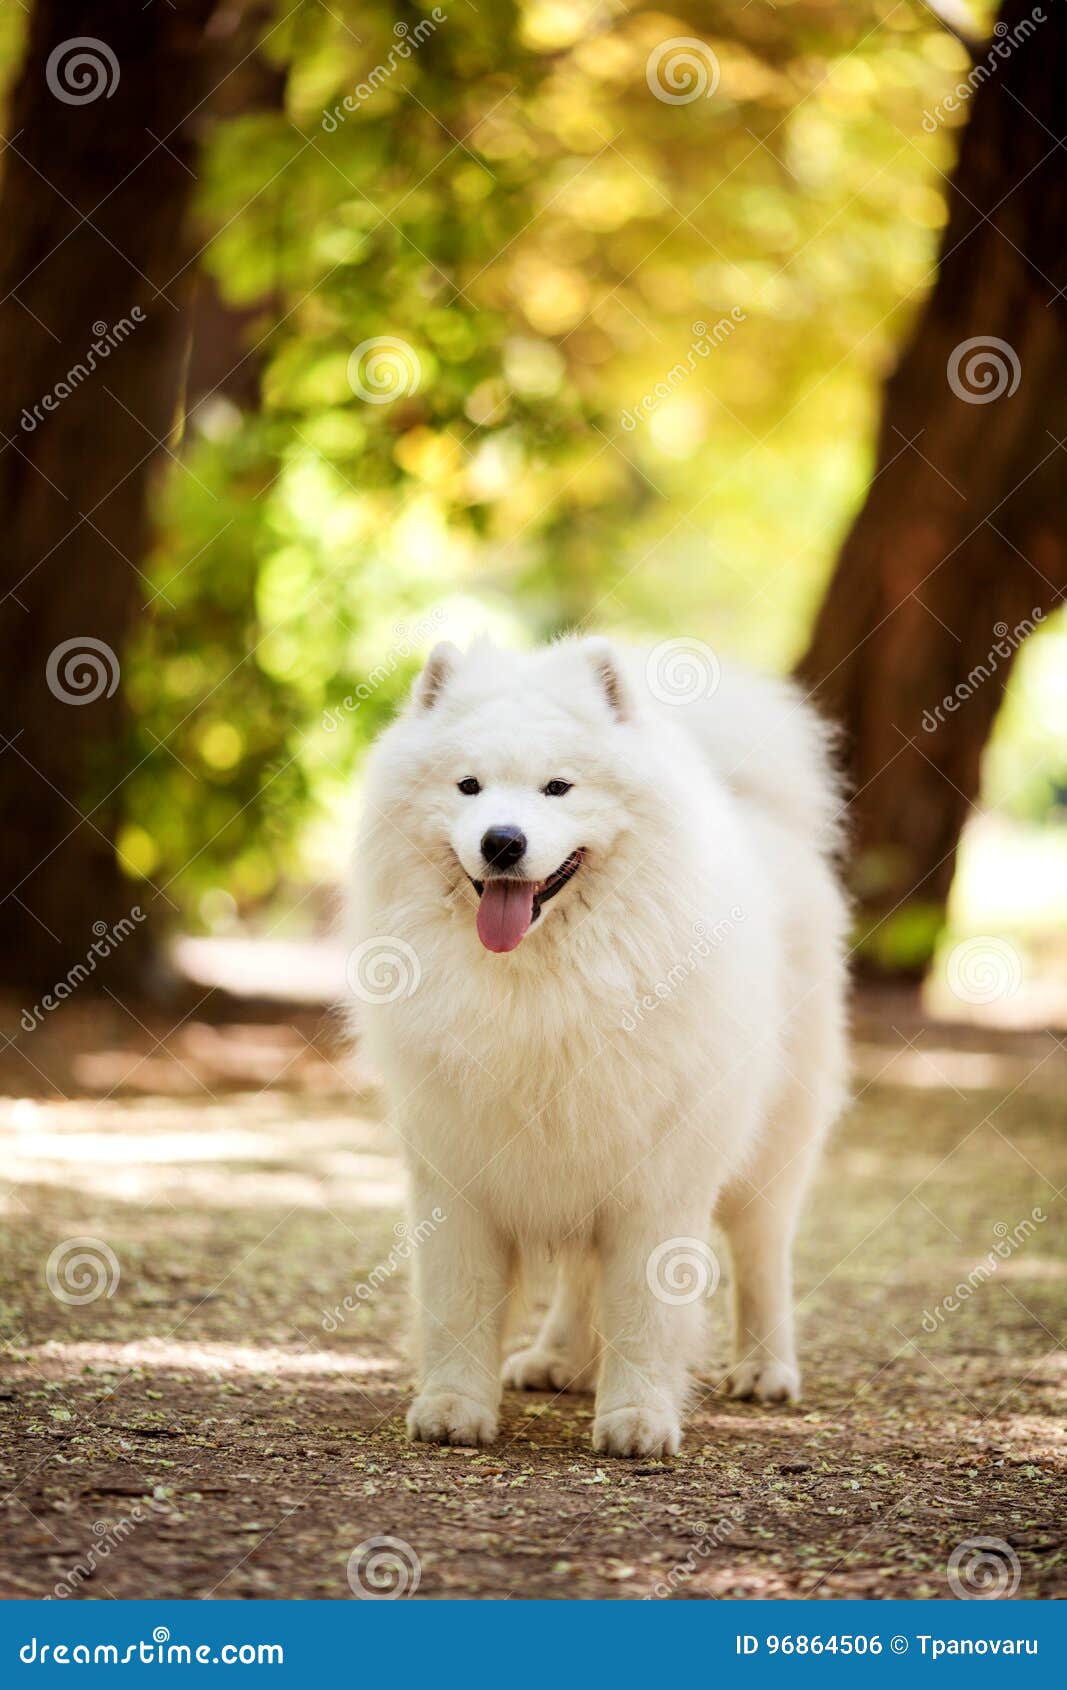 Big white samoyed dog stock photo. Image of lovely, samoyed - 96864506